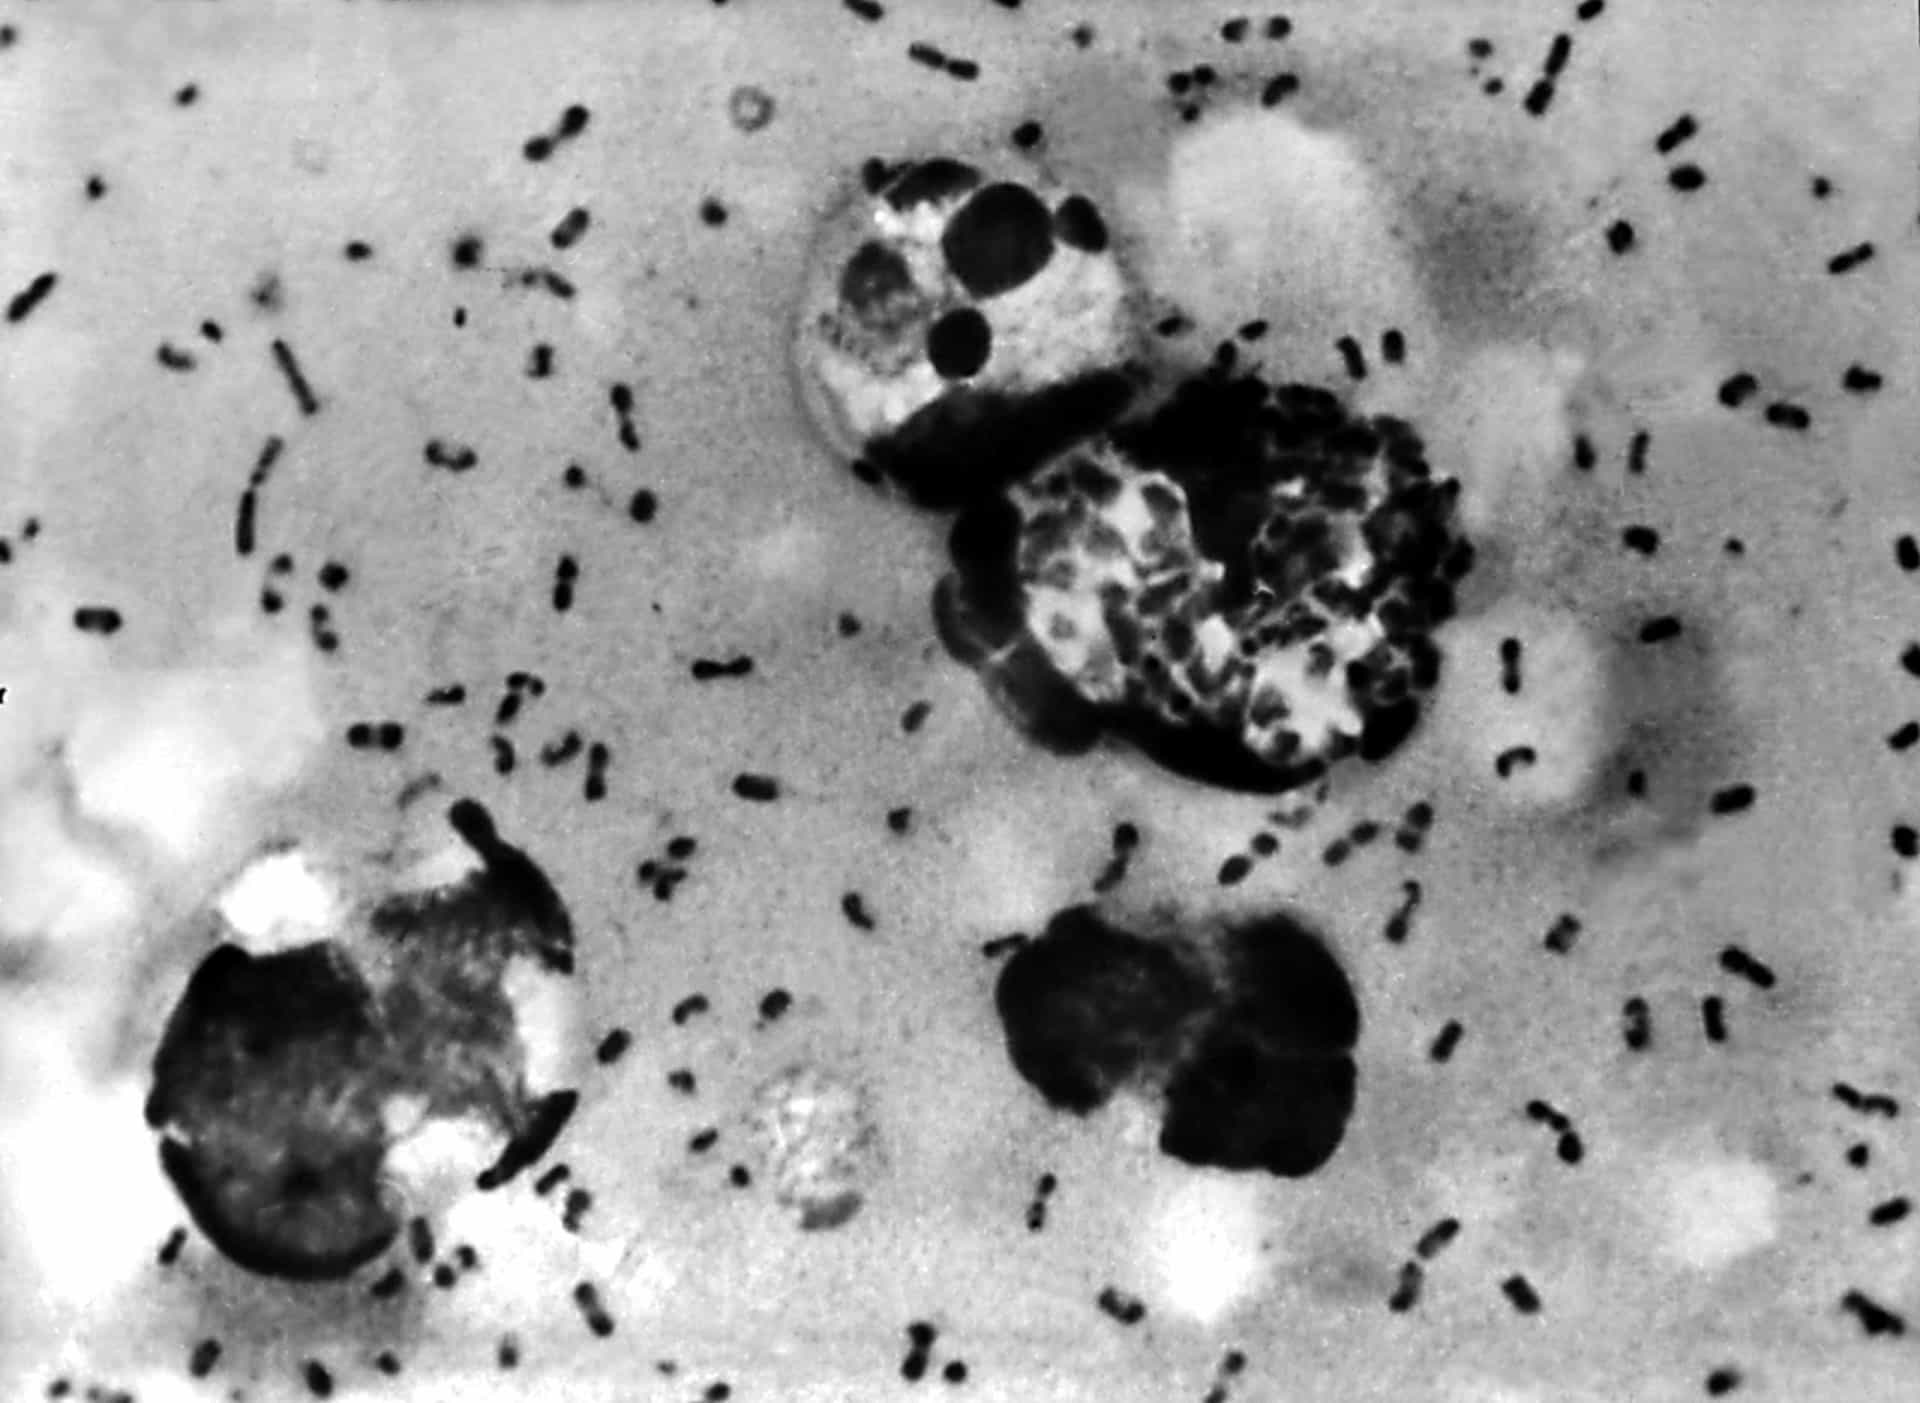 <p>De pest was de meest dodelijke pandemie die in de menselijke geschiedenis werd geregistreerd. Het markeerde het begin van de zogenaamde Tweede Pandemie, een reeks verwoestende uitbraken die zich uitstrekten van de jaren 1300 tot de vroege jaren 1800. De builenpest, ook bekend als de Zwarte Dood, werd veroorzaakt door de bacterie Yersinia pestis of Y. pestis.</p>